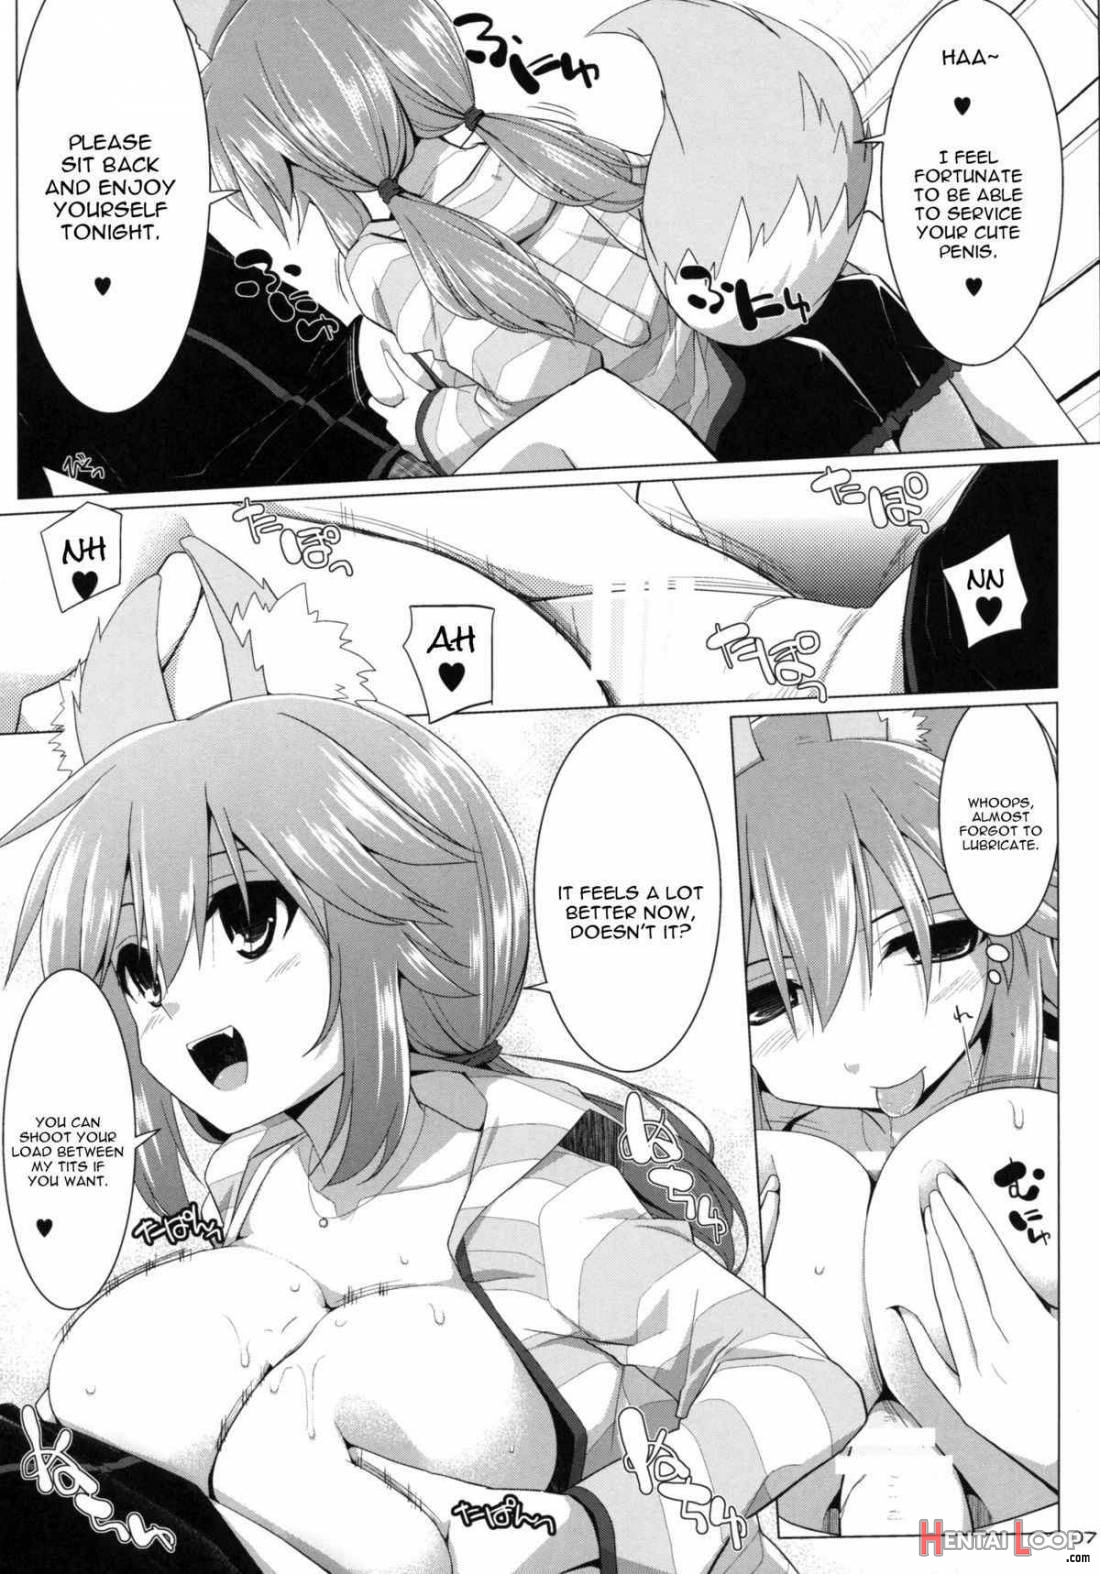 Goshujin-sama Oppai Desu Yo!! 2 page 4